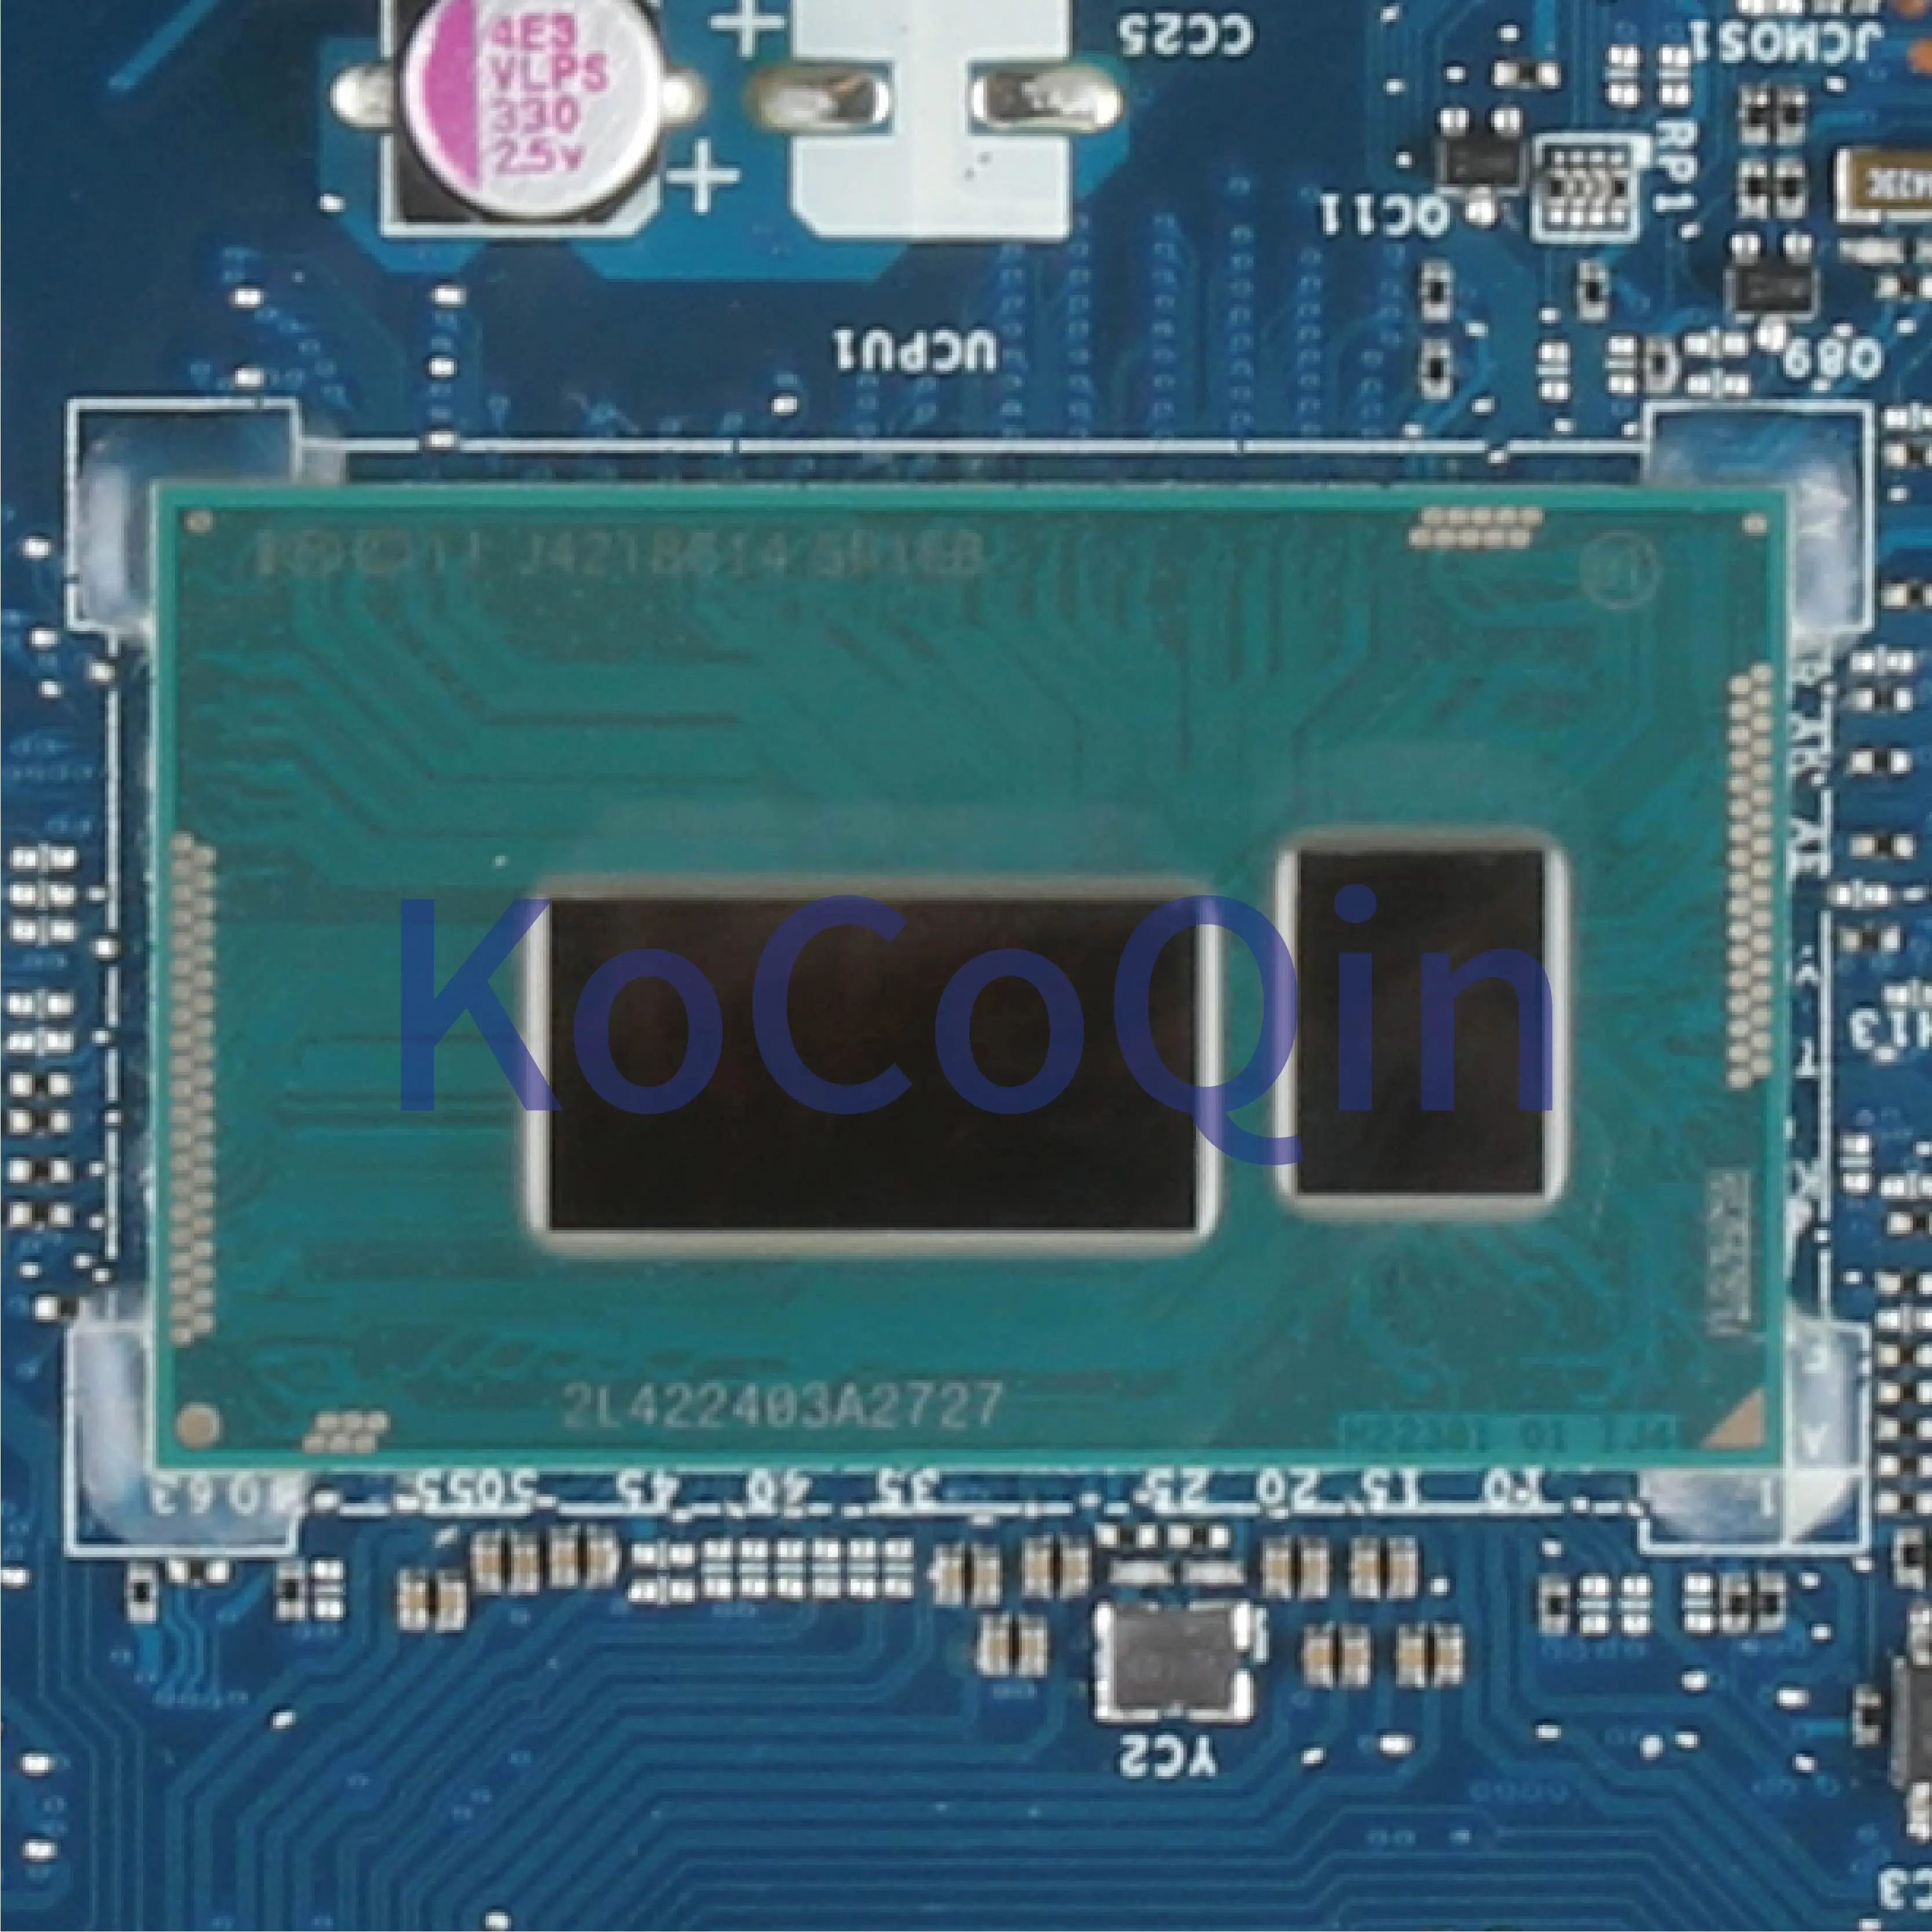 KoCoQin placa de baza Pentru Laptop HP Probook 440 450 470 G2 Core I7-4510U 216-0858030 Placa de baza LA-B181P 768401-001 768401-501